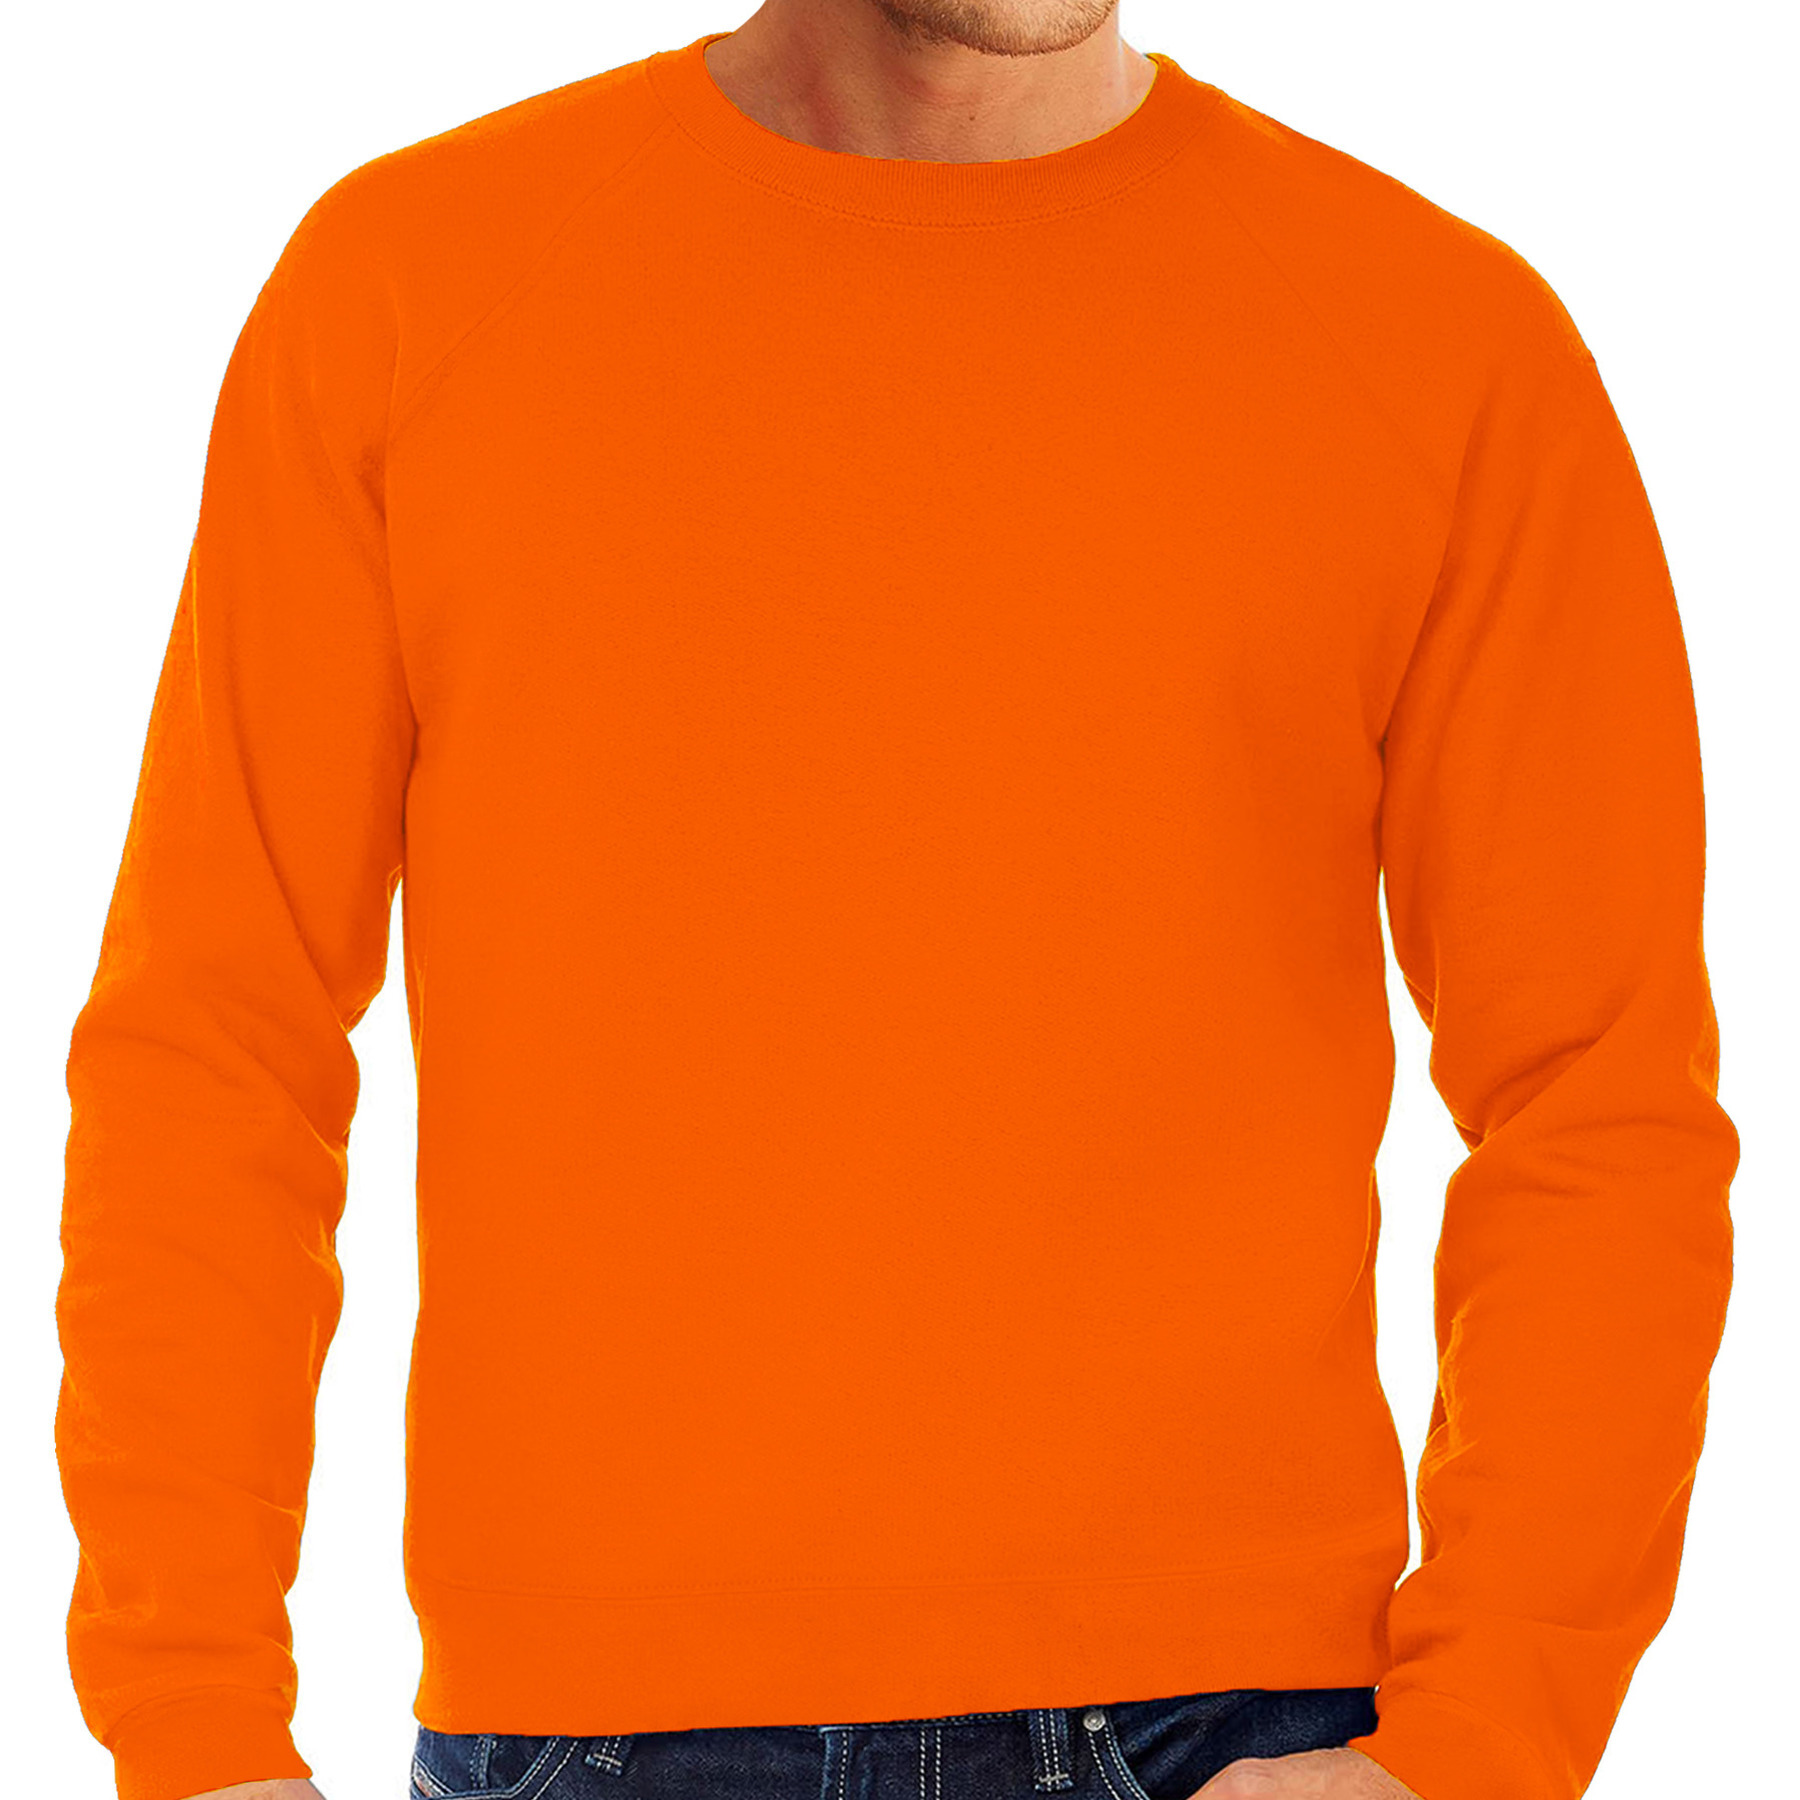 Oranje sweater - sweatshirt trui met raglan mouwen en ronde hals voor heren